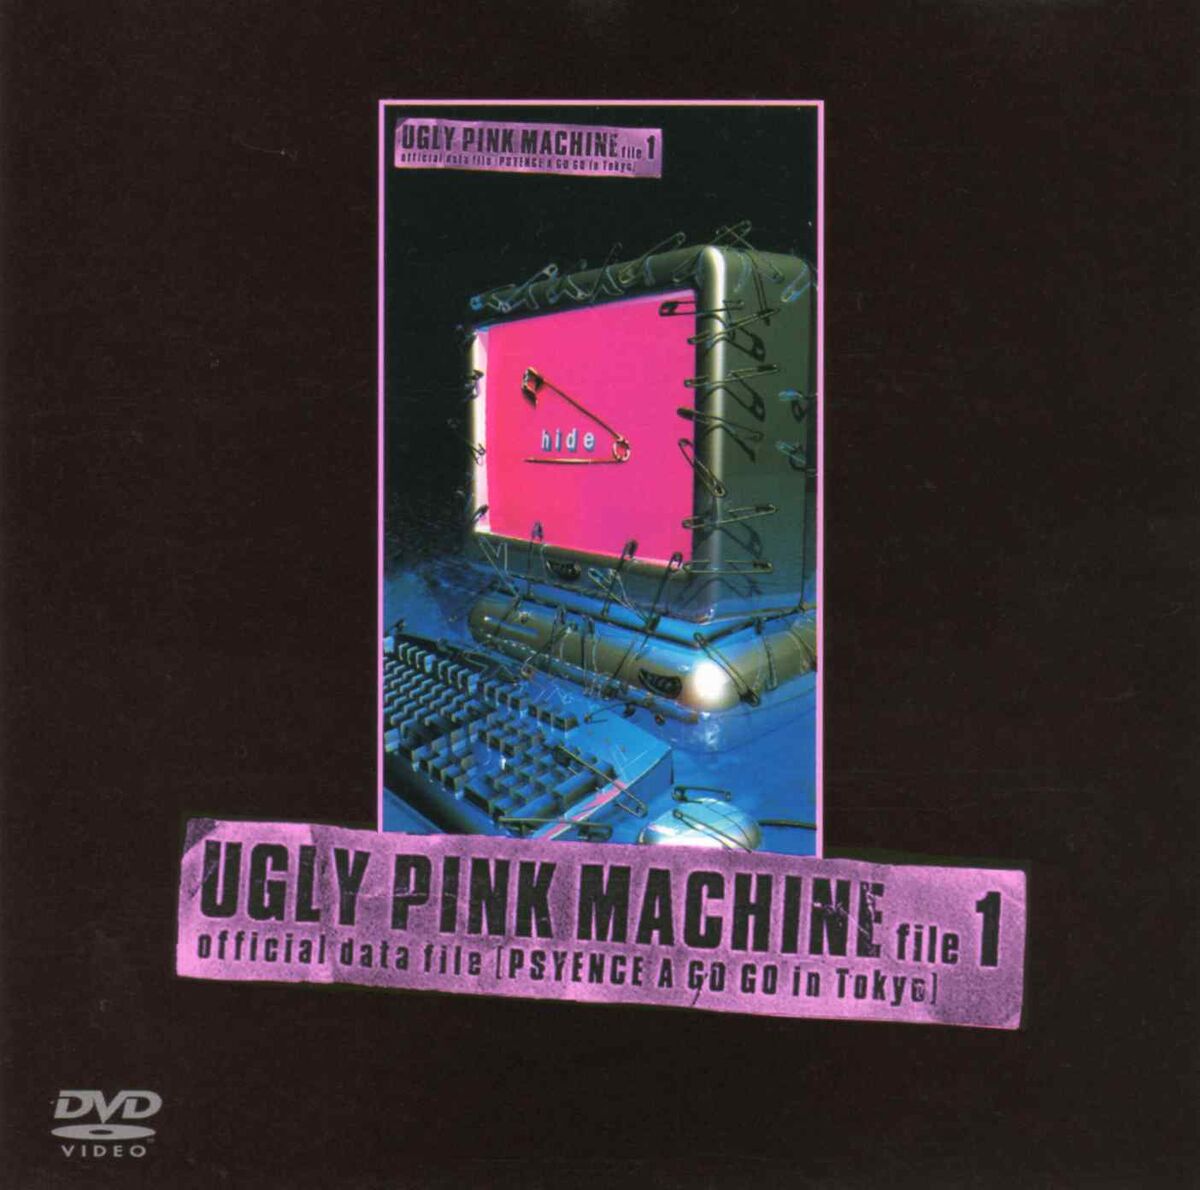 UGLY PINK MACHINE file 1 [Blu-ray]